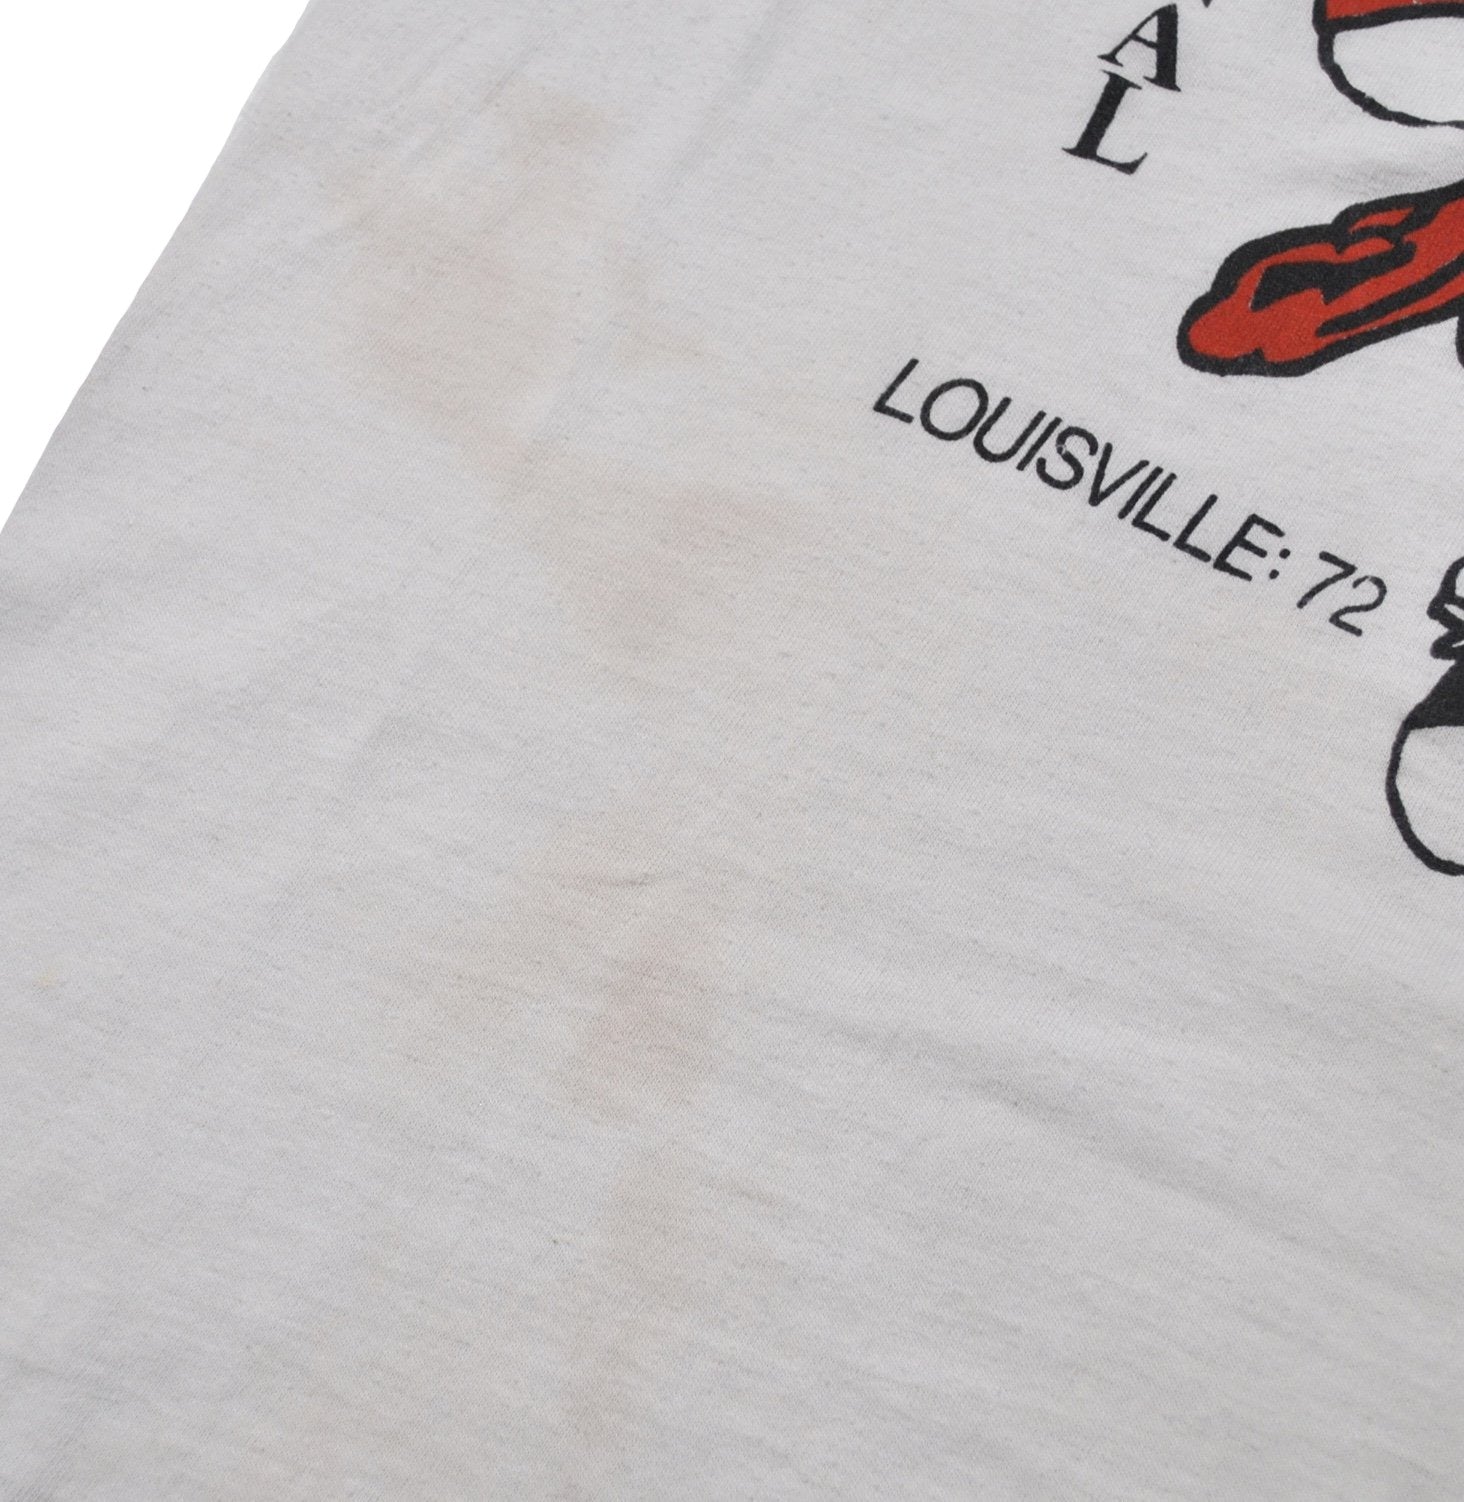 Vintage 1986 Louisville Cardinals Final Four Basketball Shirt